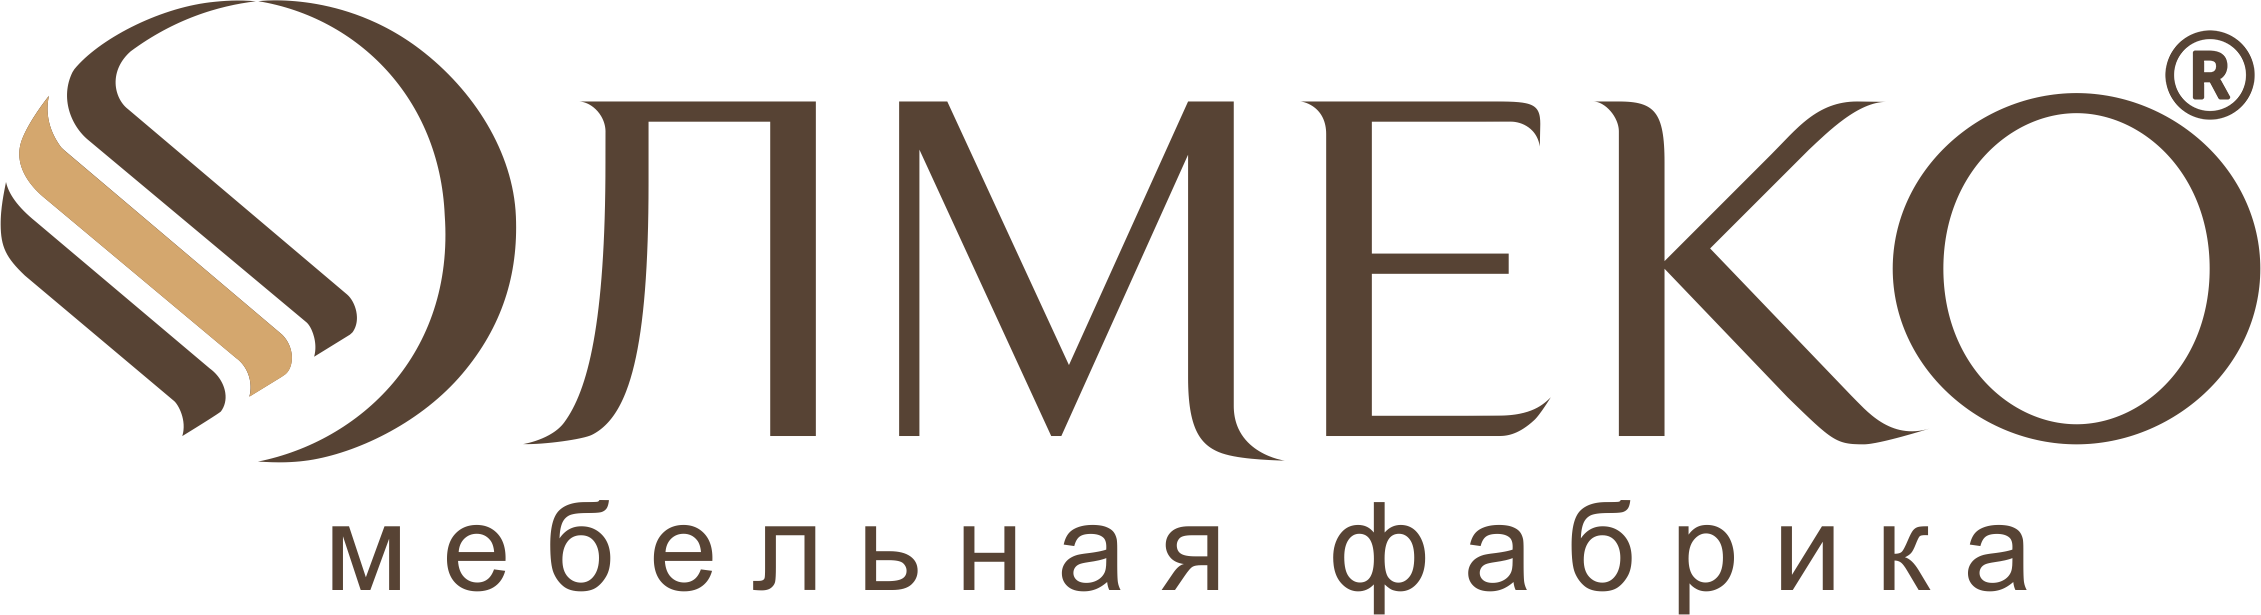 Логотип мебельной фабрики ОЛМЕКО